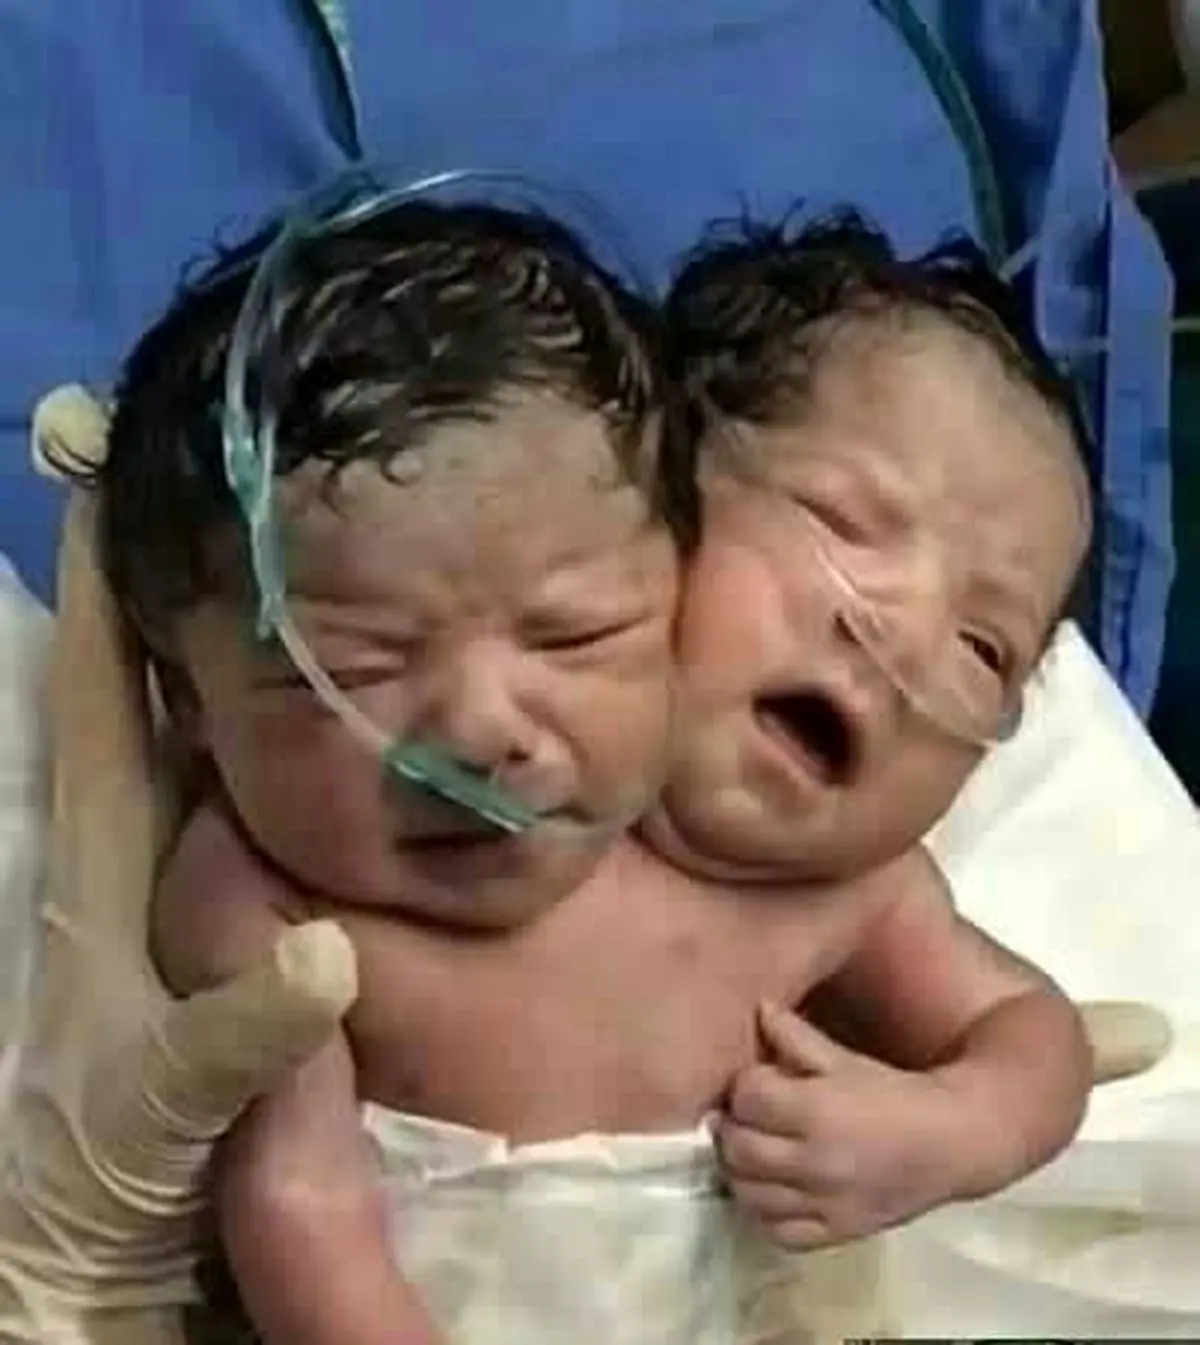 تصویری عجیب از نوزادی که با ۲ سر به دنیا آمد | بدنیا آمدن نوزاد 2 سر آخرالزمانی +عکس